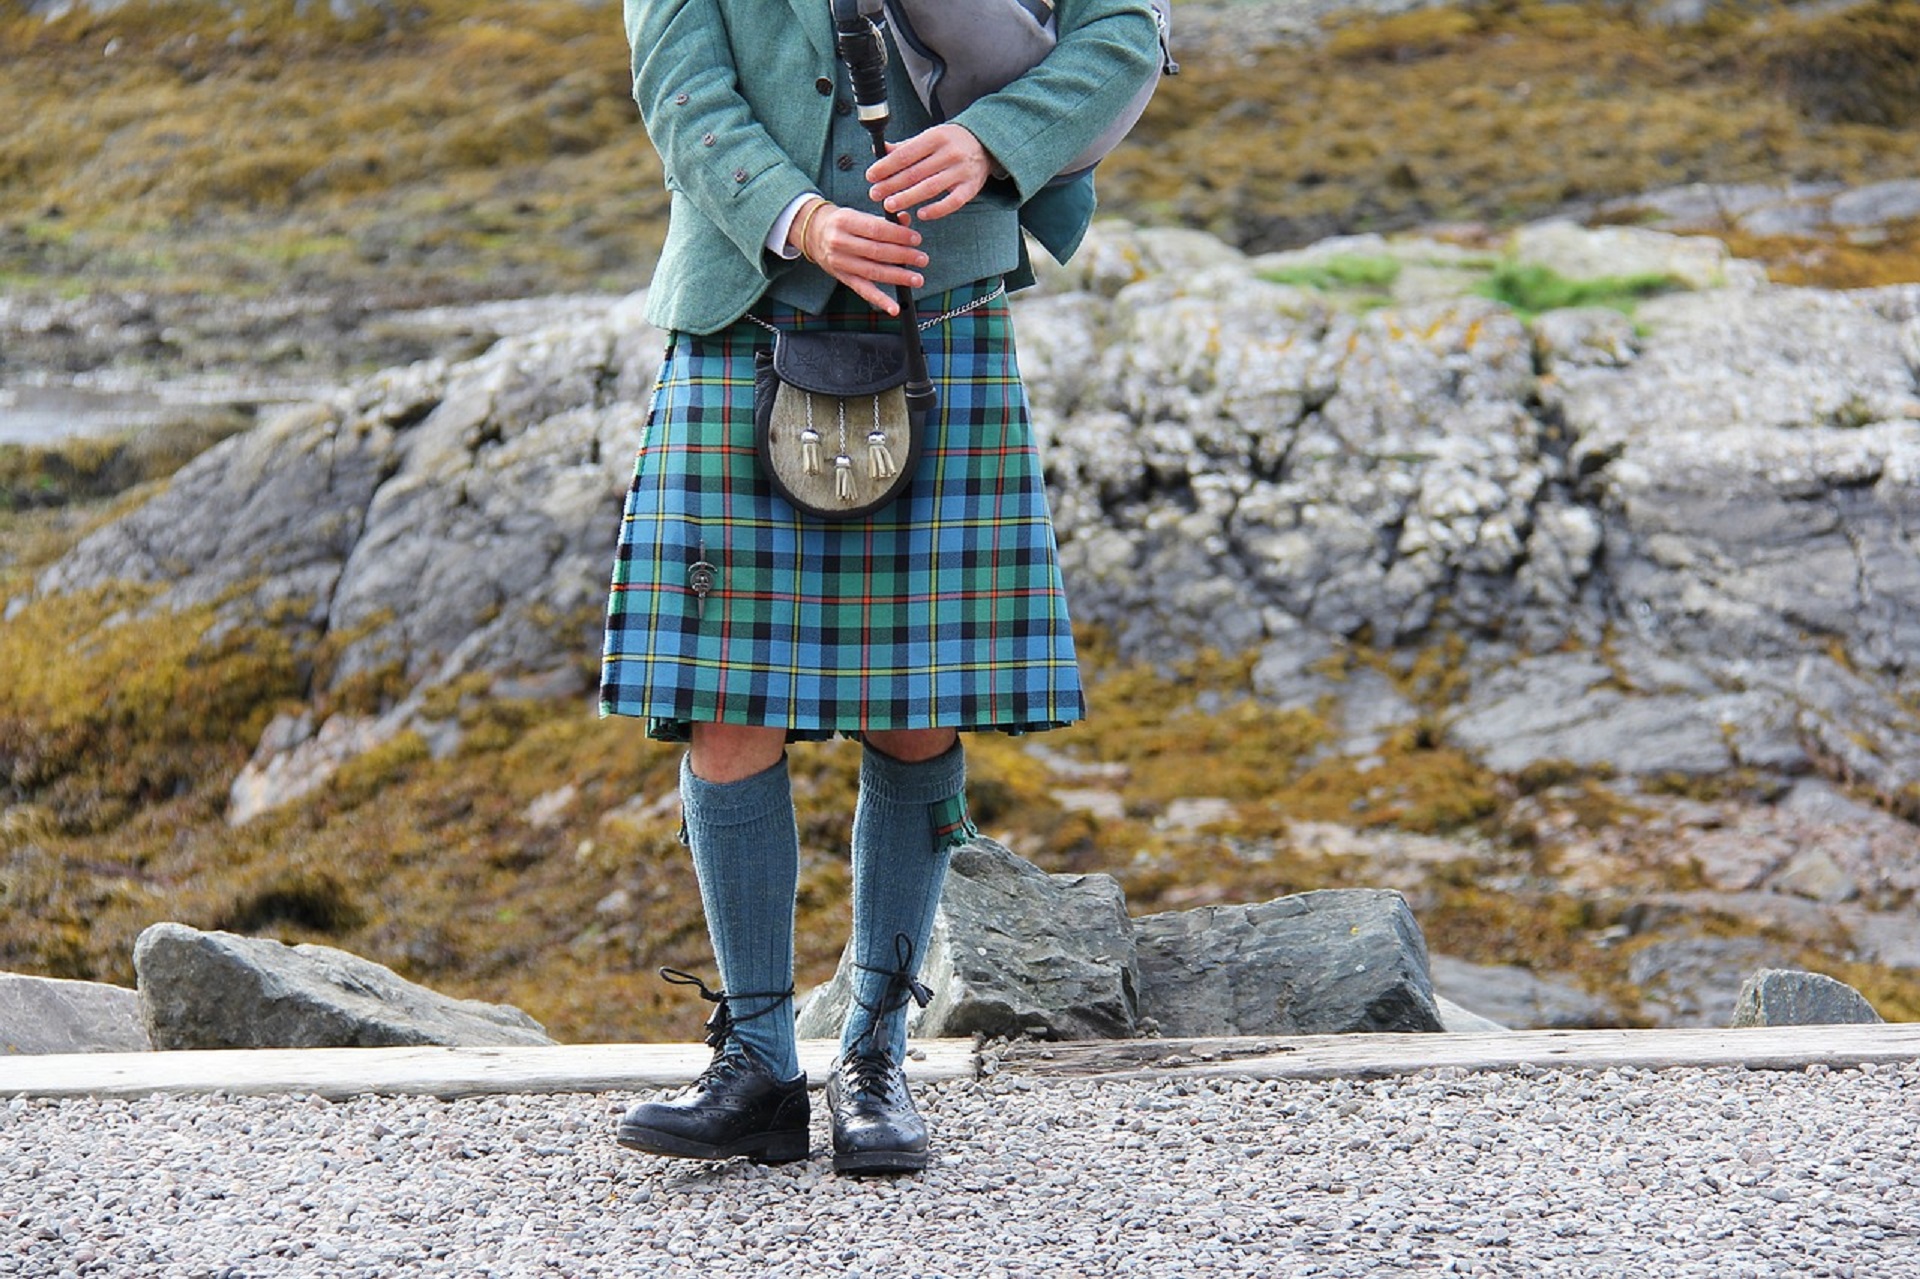 tenue traditionnelle écossaise avec kilt, épingle et sporan (bourse en peau)-est ce que les ecossais portent un slip sous leur kilt ?